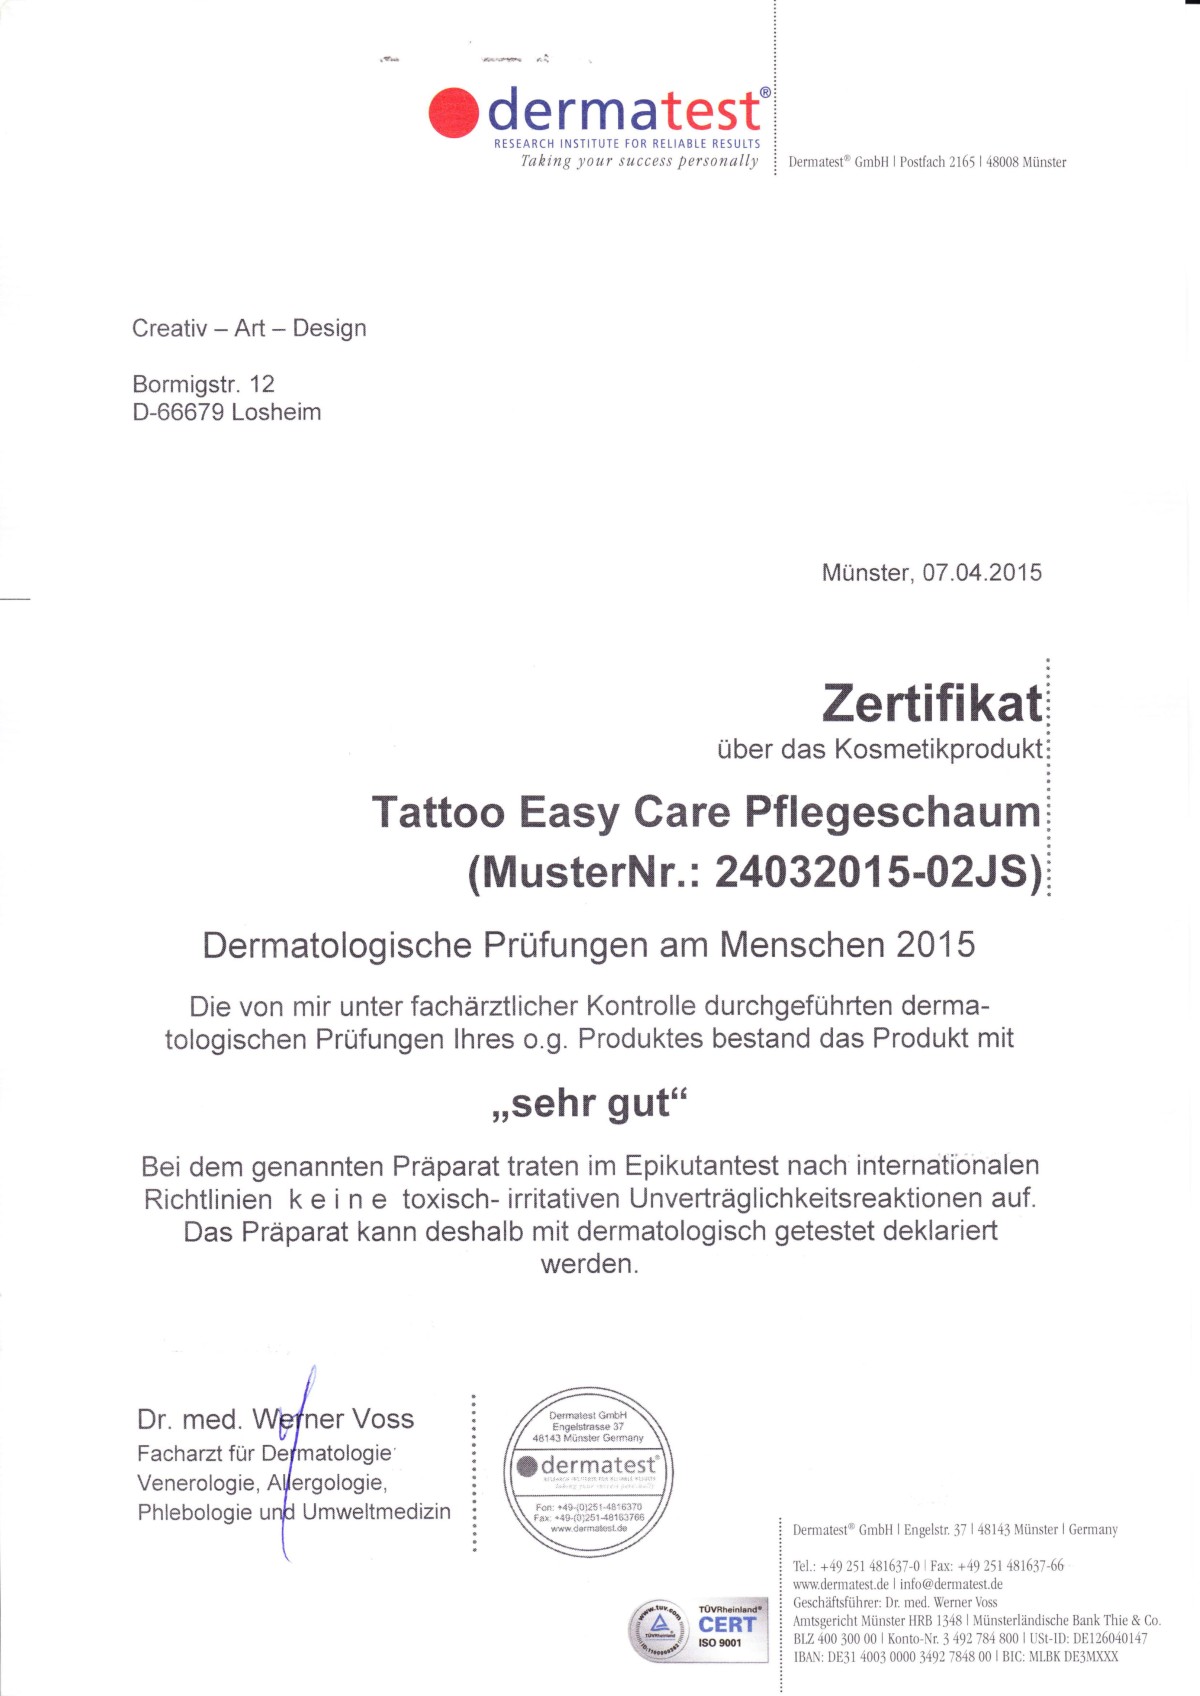 Tattoo-easy-care